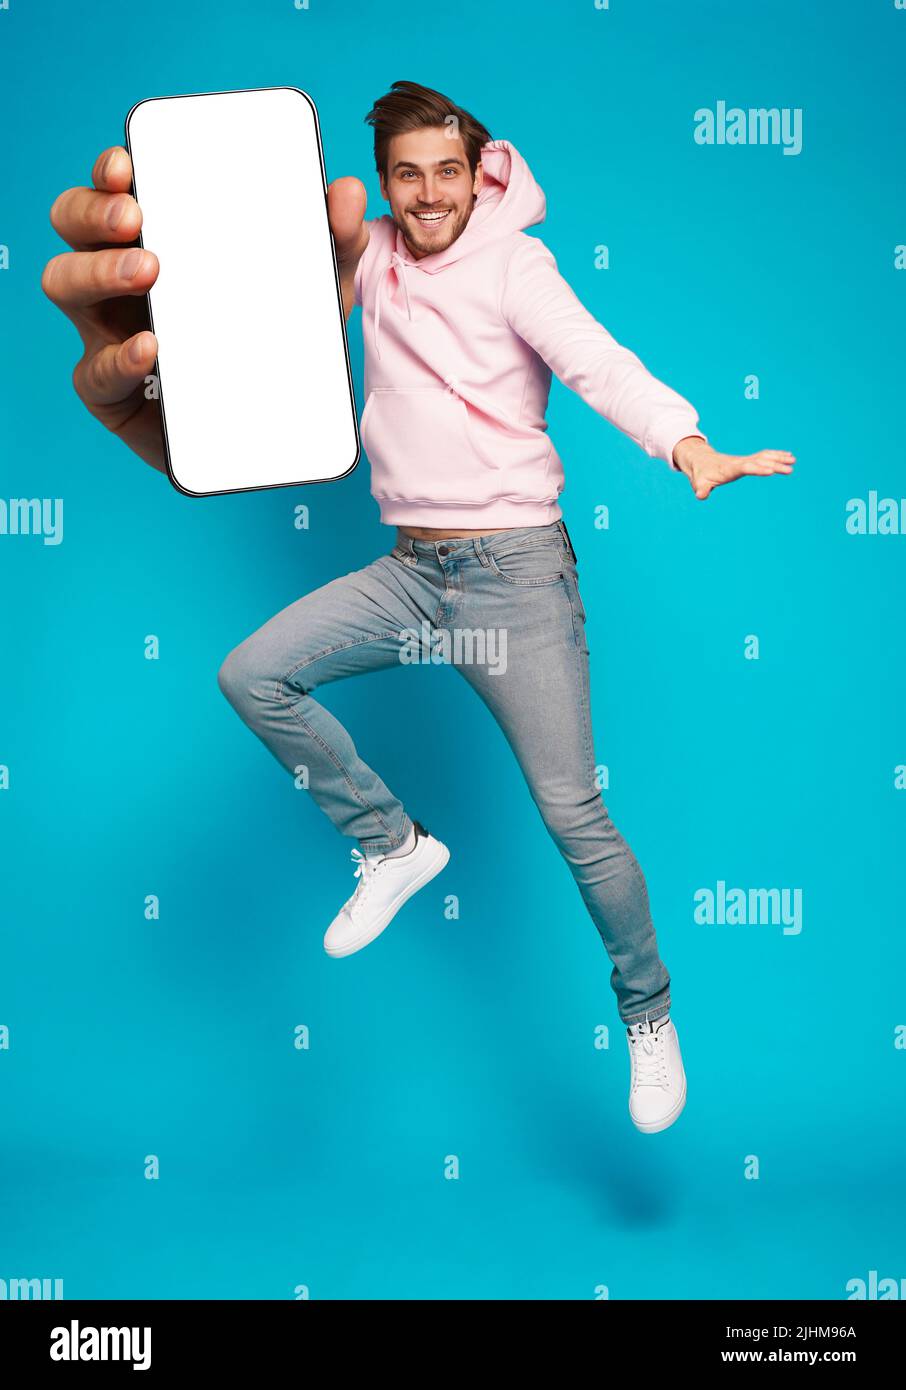 Werbung Für Mobile Apps. Schöner Aufgeregt Mann Zeigt Auf Leeren Smartphone-Bildschirm Posiert Über Hellblauen Studio Hintergrund, Lächelnd Zu Kamera Stockfoto